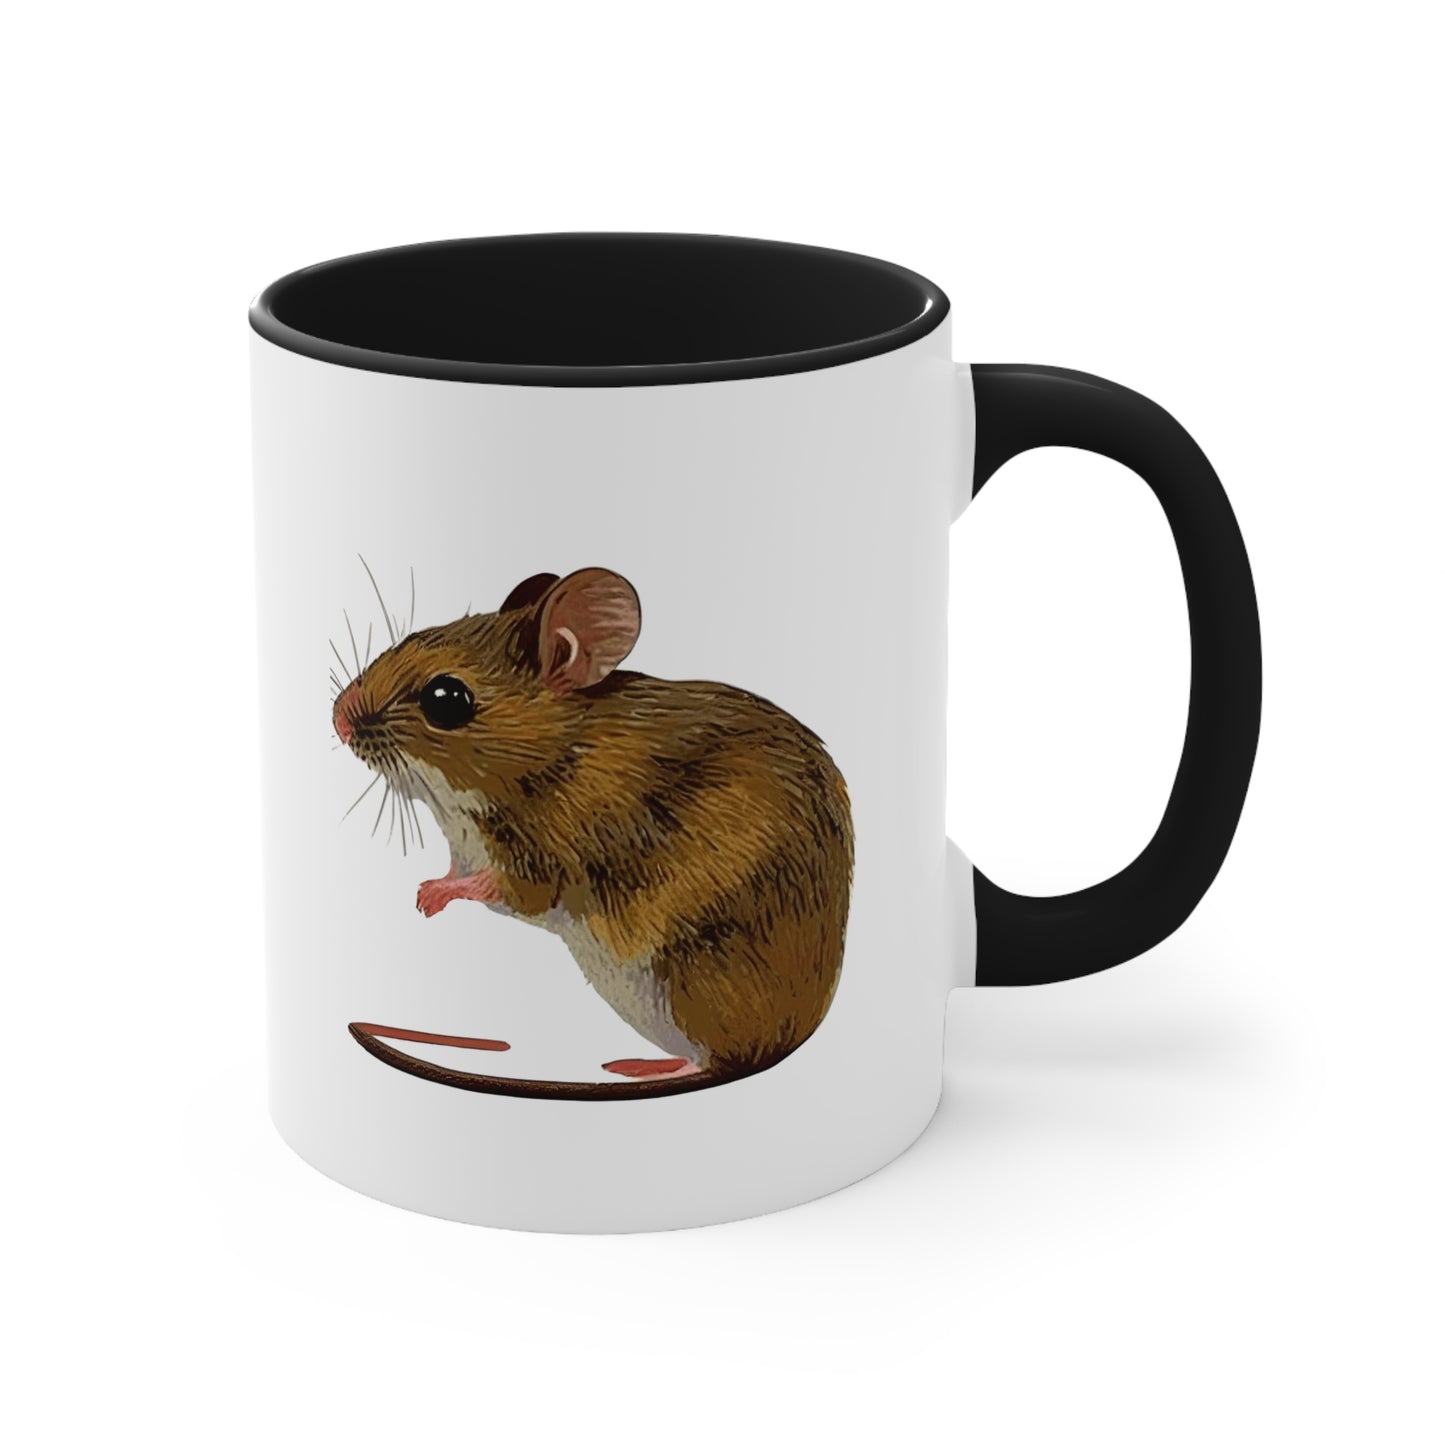 Sweet Mouse Ceramic Mug